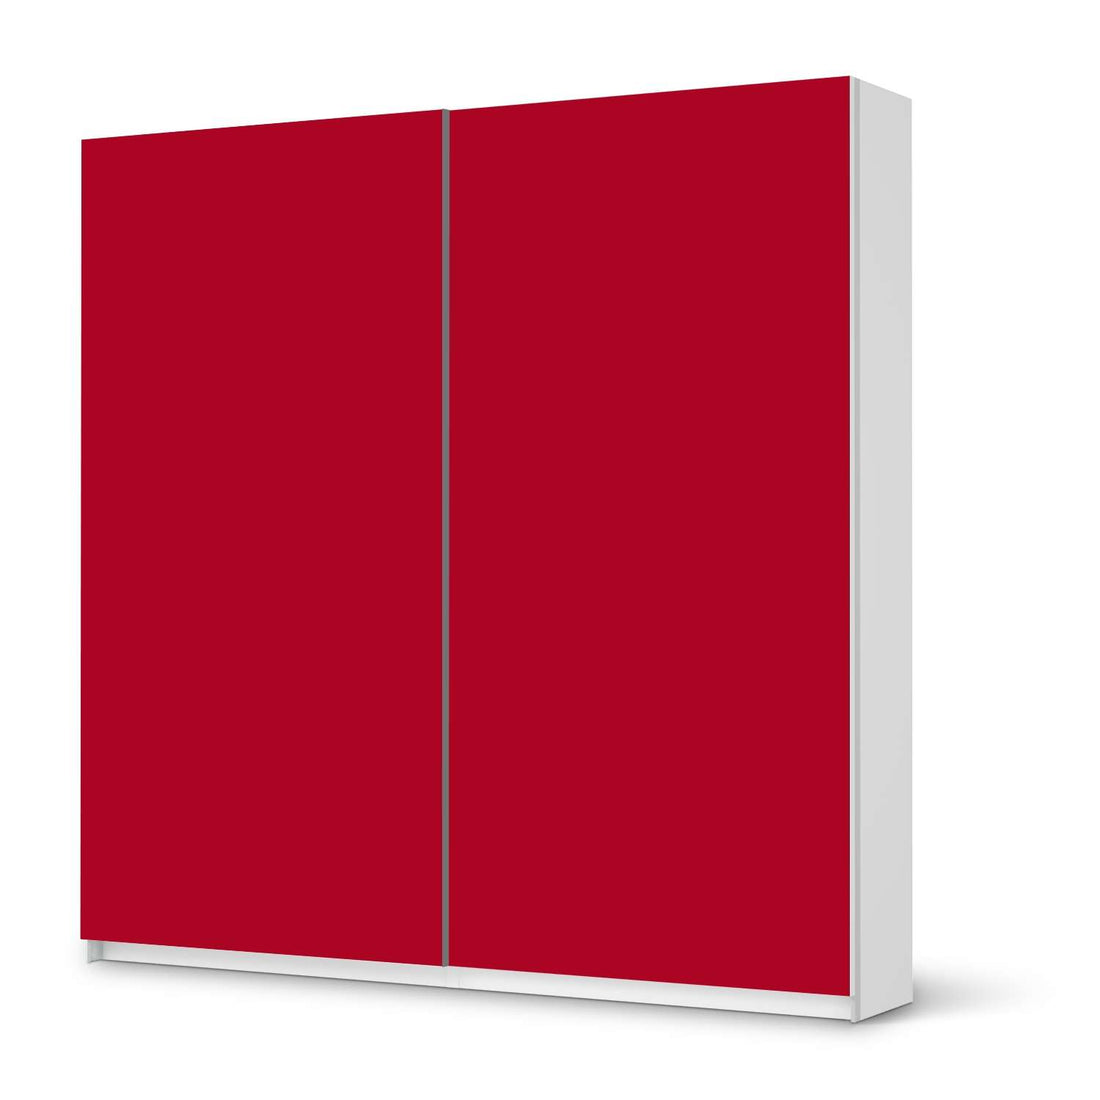 Möbel Klebefolie Rot Dark - IKEA Pax Schrank 201 cm Höhe - Schiebetür - weiss